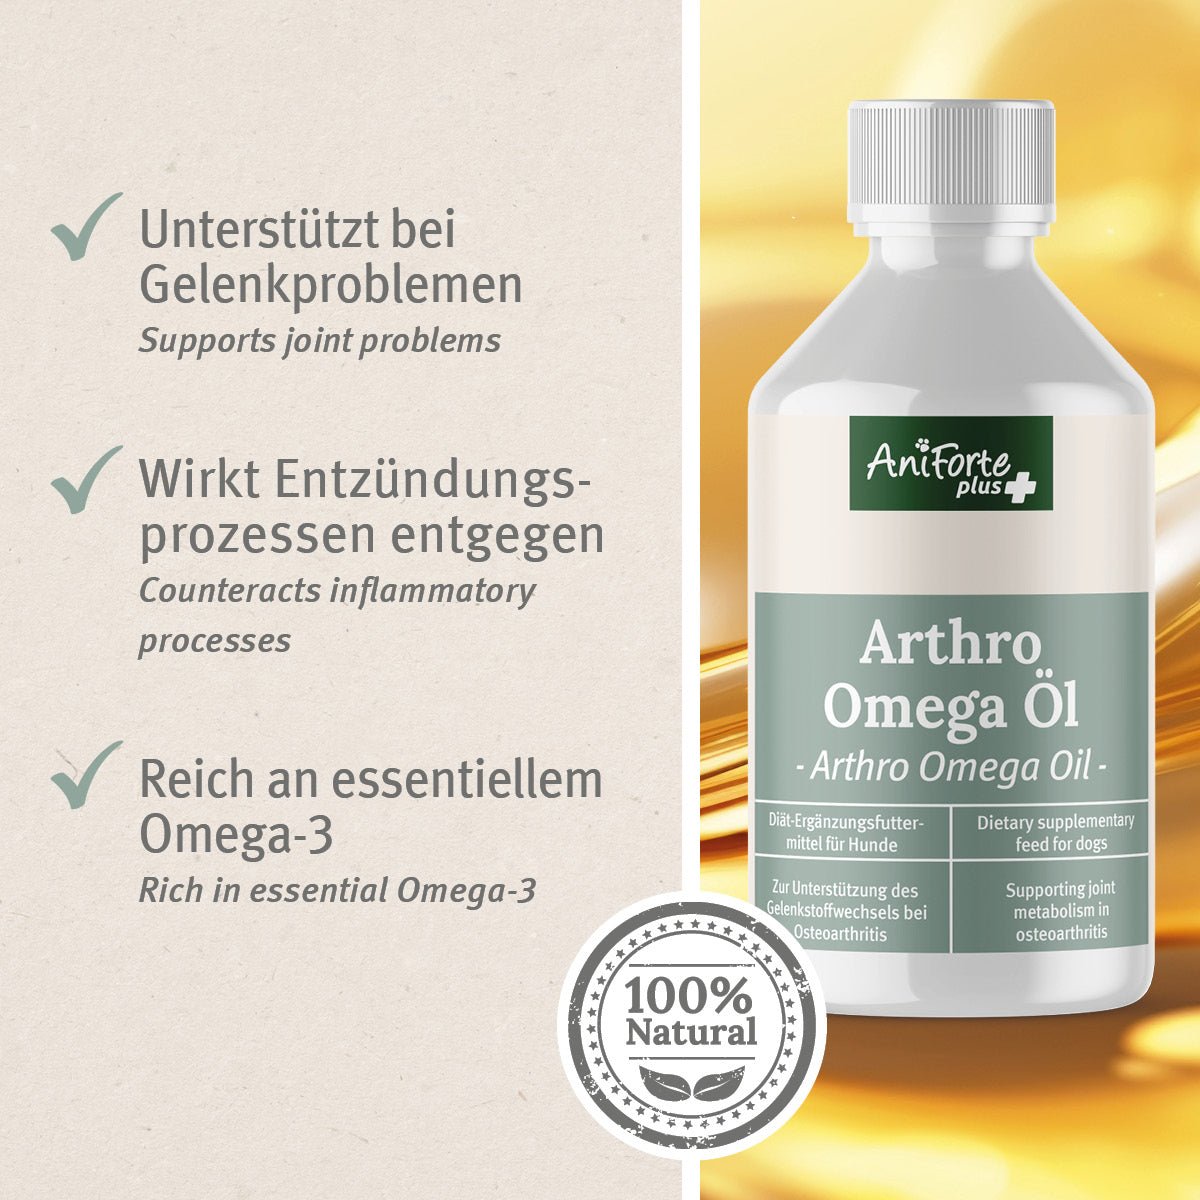 Arthro Omega Öl unterstützt bei Gelenkproblemen, wirkt antientzündlich und ist reich an Omega 3- AniForte